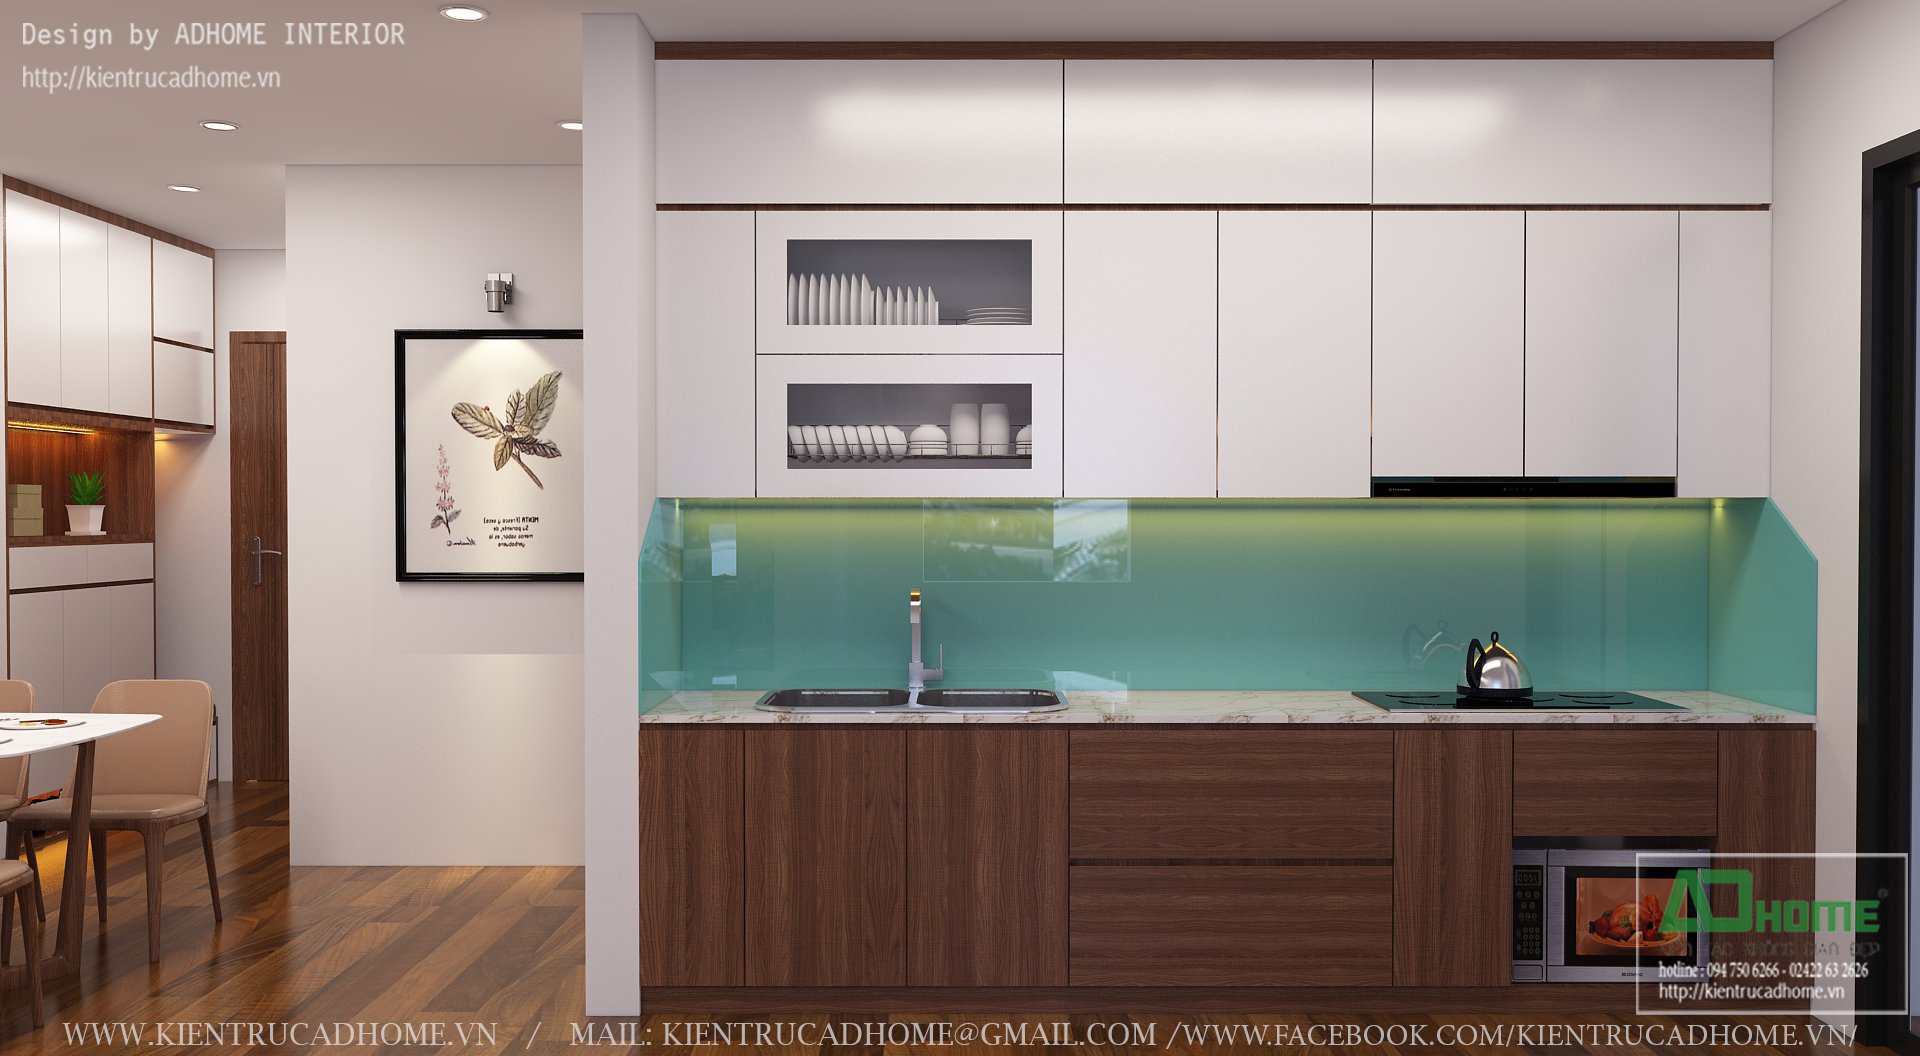  Thiết kế nội thất phòng Bếp căn hộ Sapphire3 - 03 Goldmark city - Hiện đại